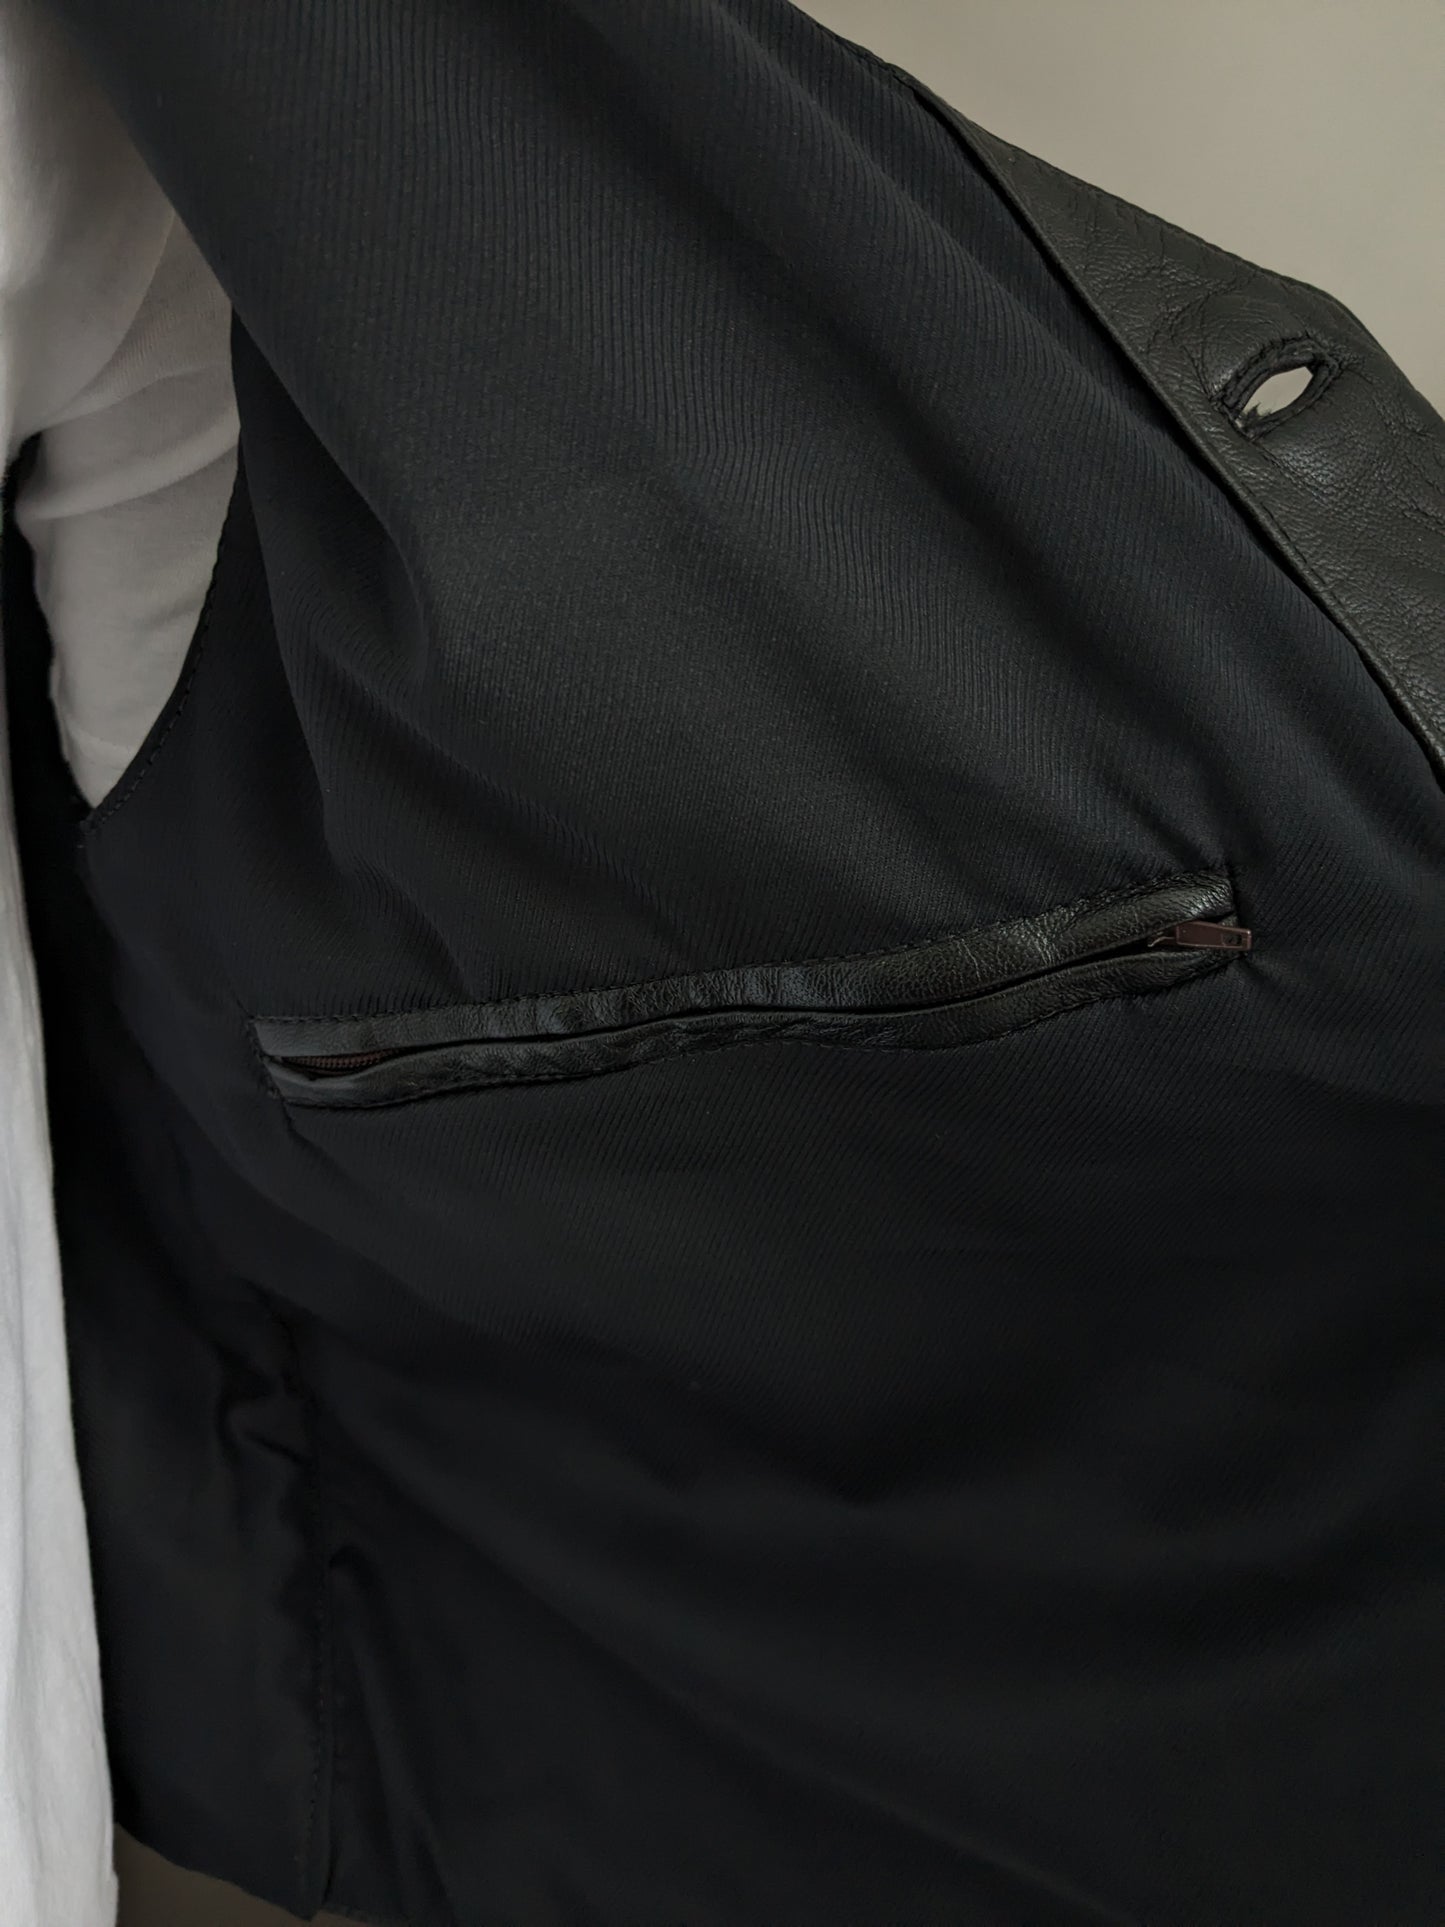 Leder doppelseitige Weste mit innerer Tasche. Schwarz. Größe xl. #318